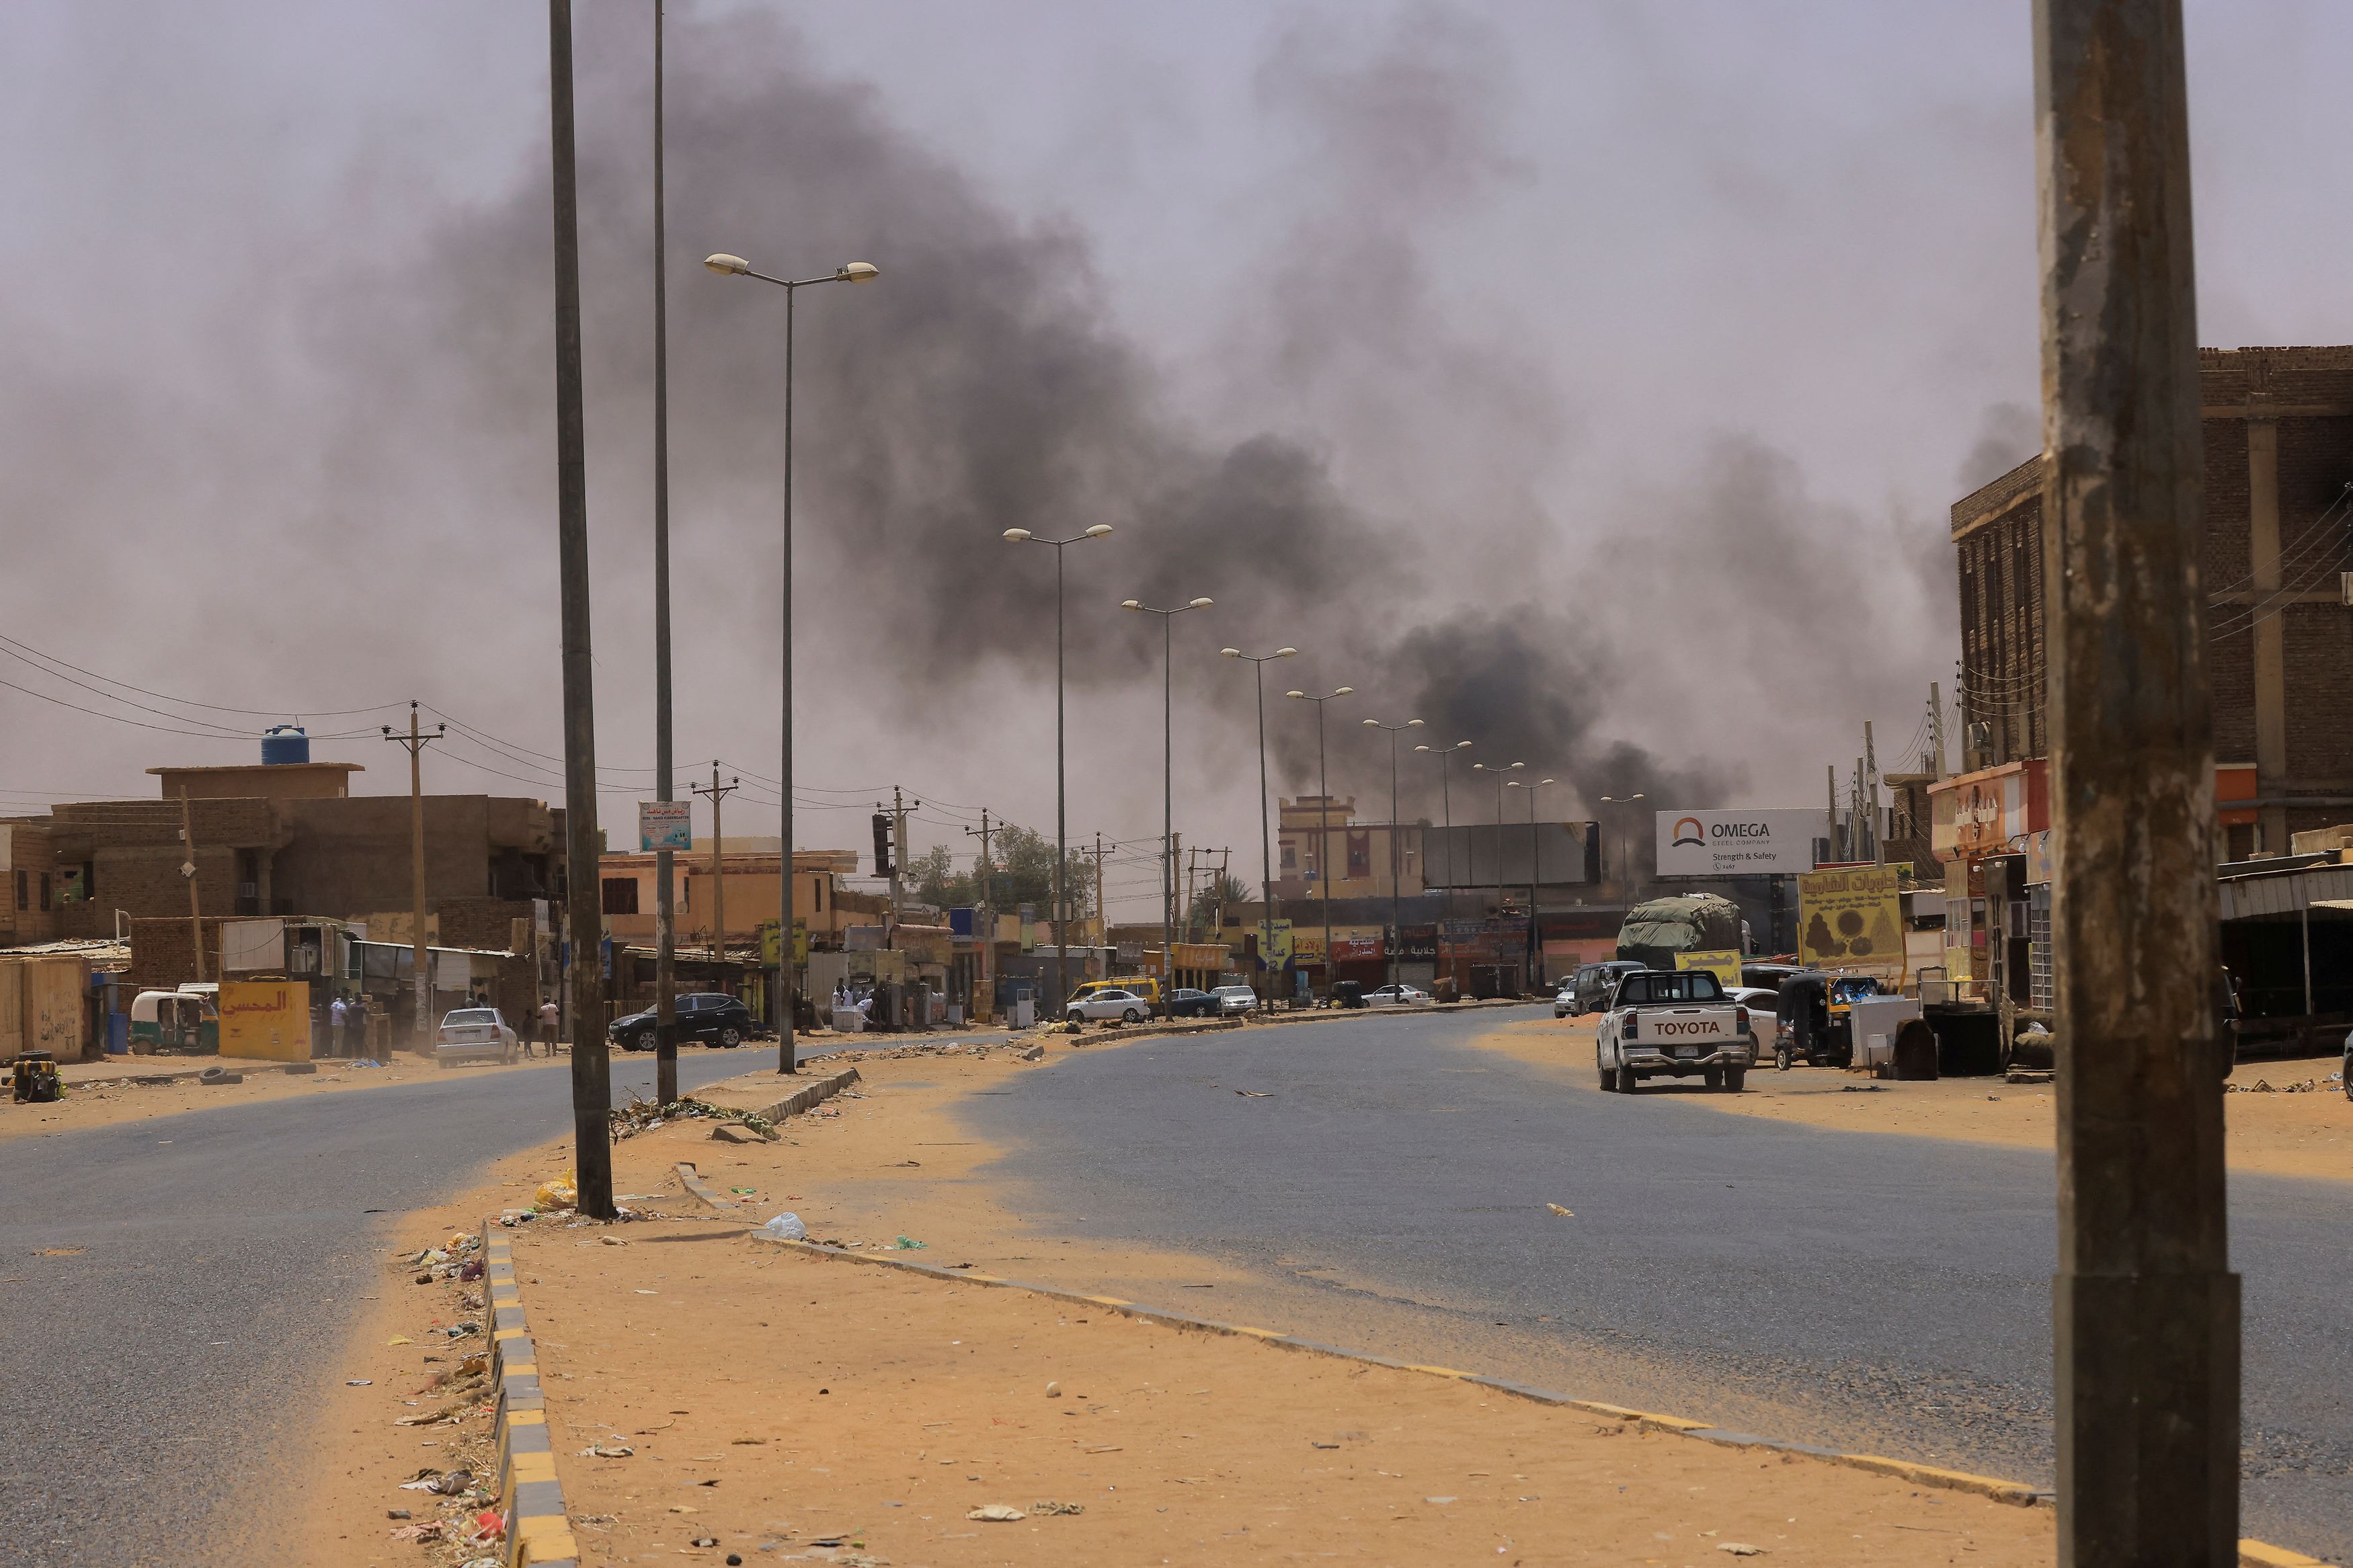 Συγκρούσεις στο Σουδάν: Για άμεσο τερματισμό της βίας καλεί ο Ζοζέπ Μπορέλ - Το προσωπικό της ΕΕ είναι ασφαλές